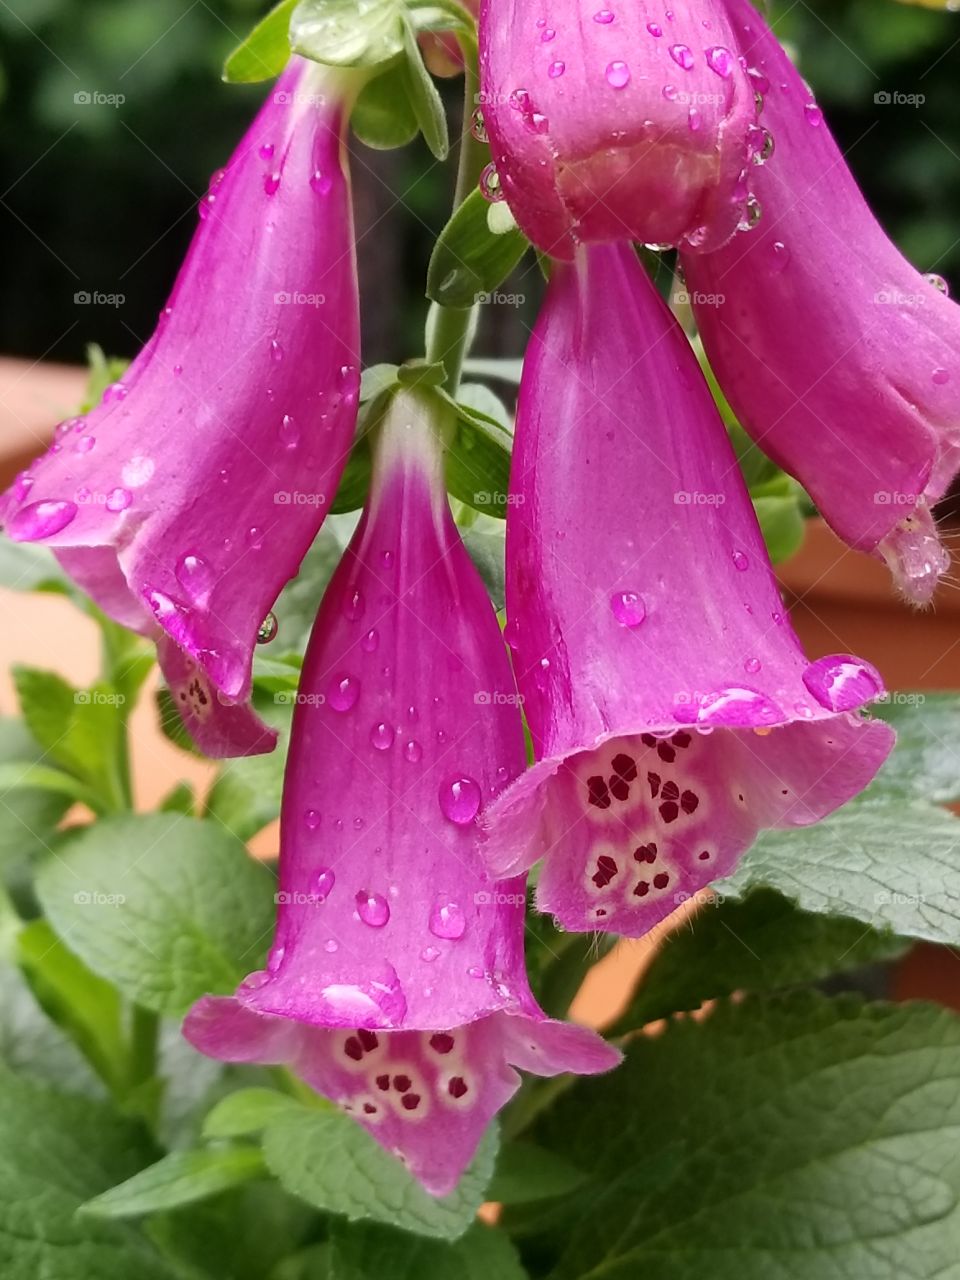 Fuschia Foxglove in the rain